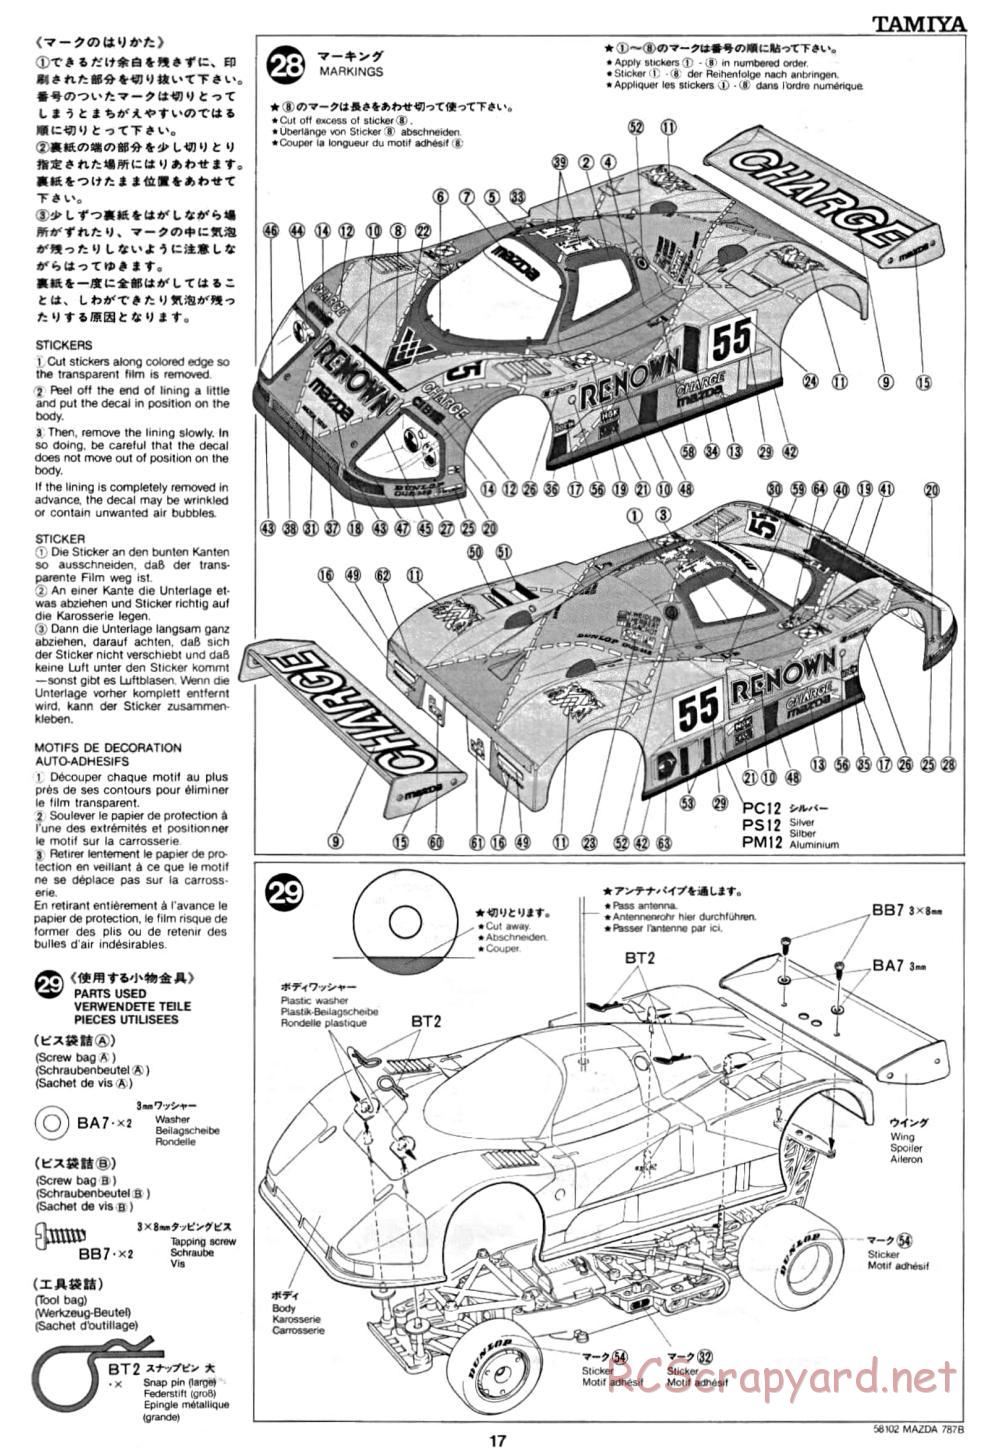 Tamiya - Mazda 787B - Group-C Chassis - Manual - Page 17